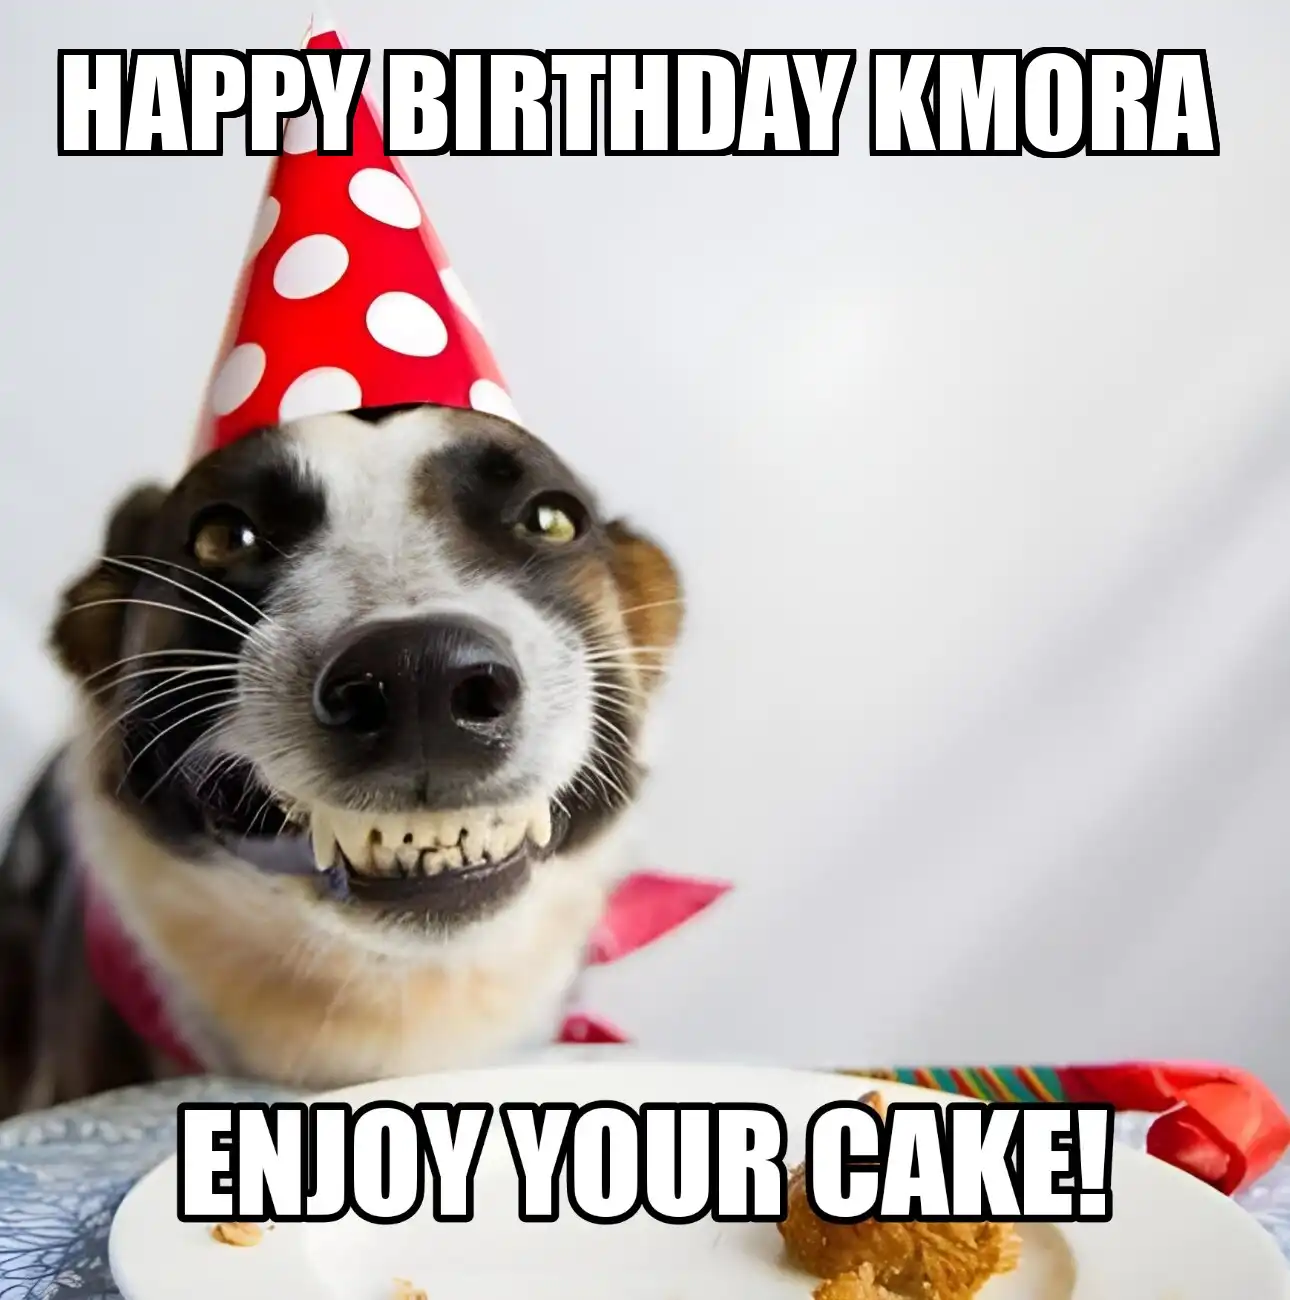 Happy Birthday Kmora Enjoy Your Cake Dog Meme